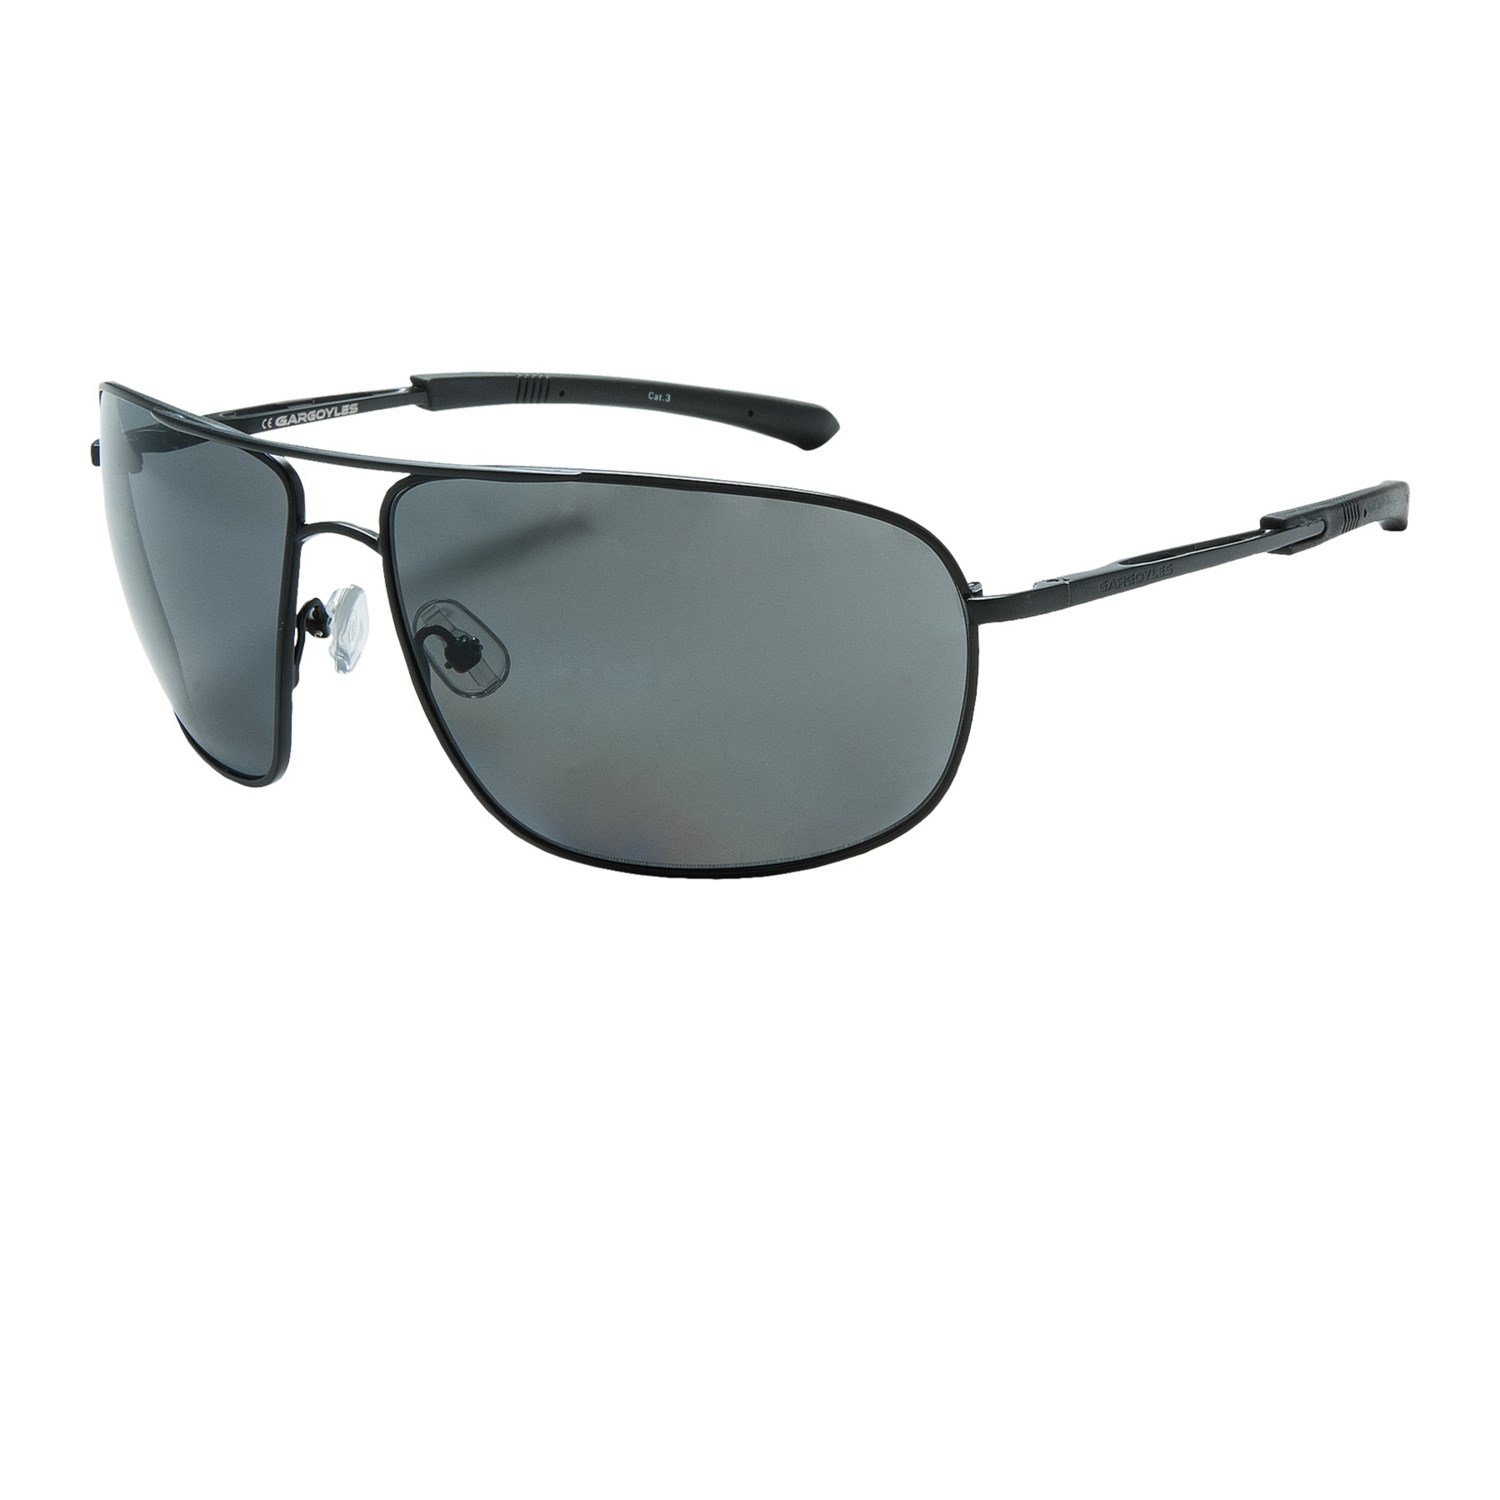 Gargoyles Shindand Sunglasses - Polarized 8661C - Save 41%